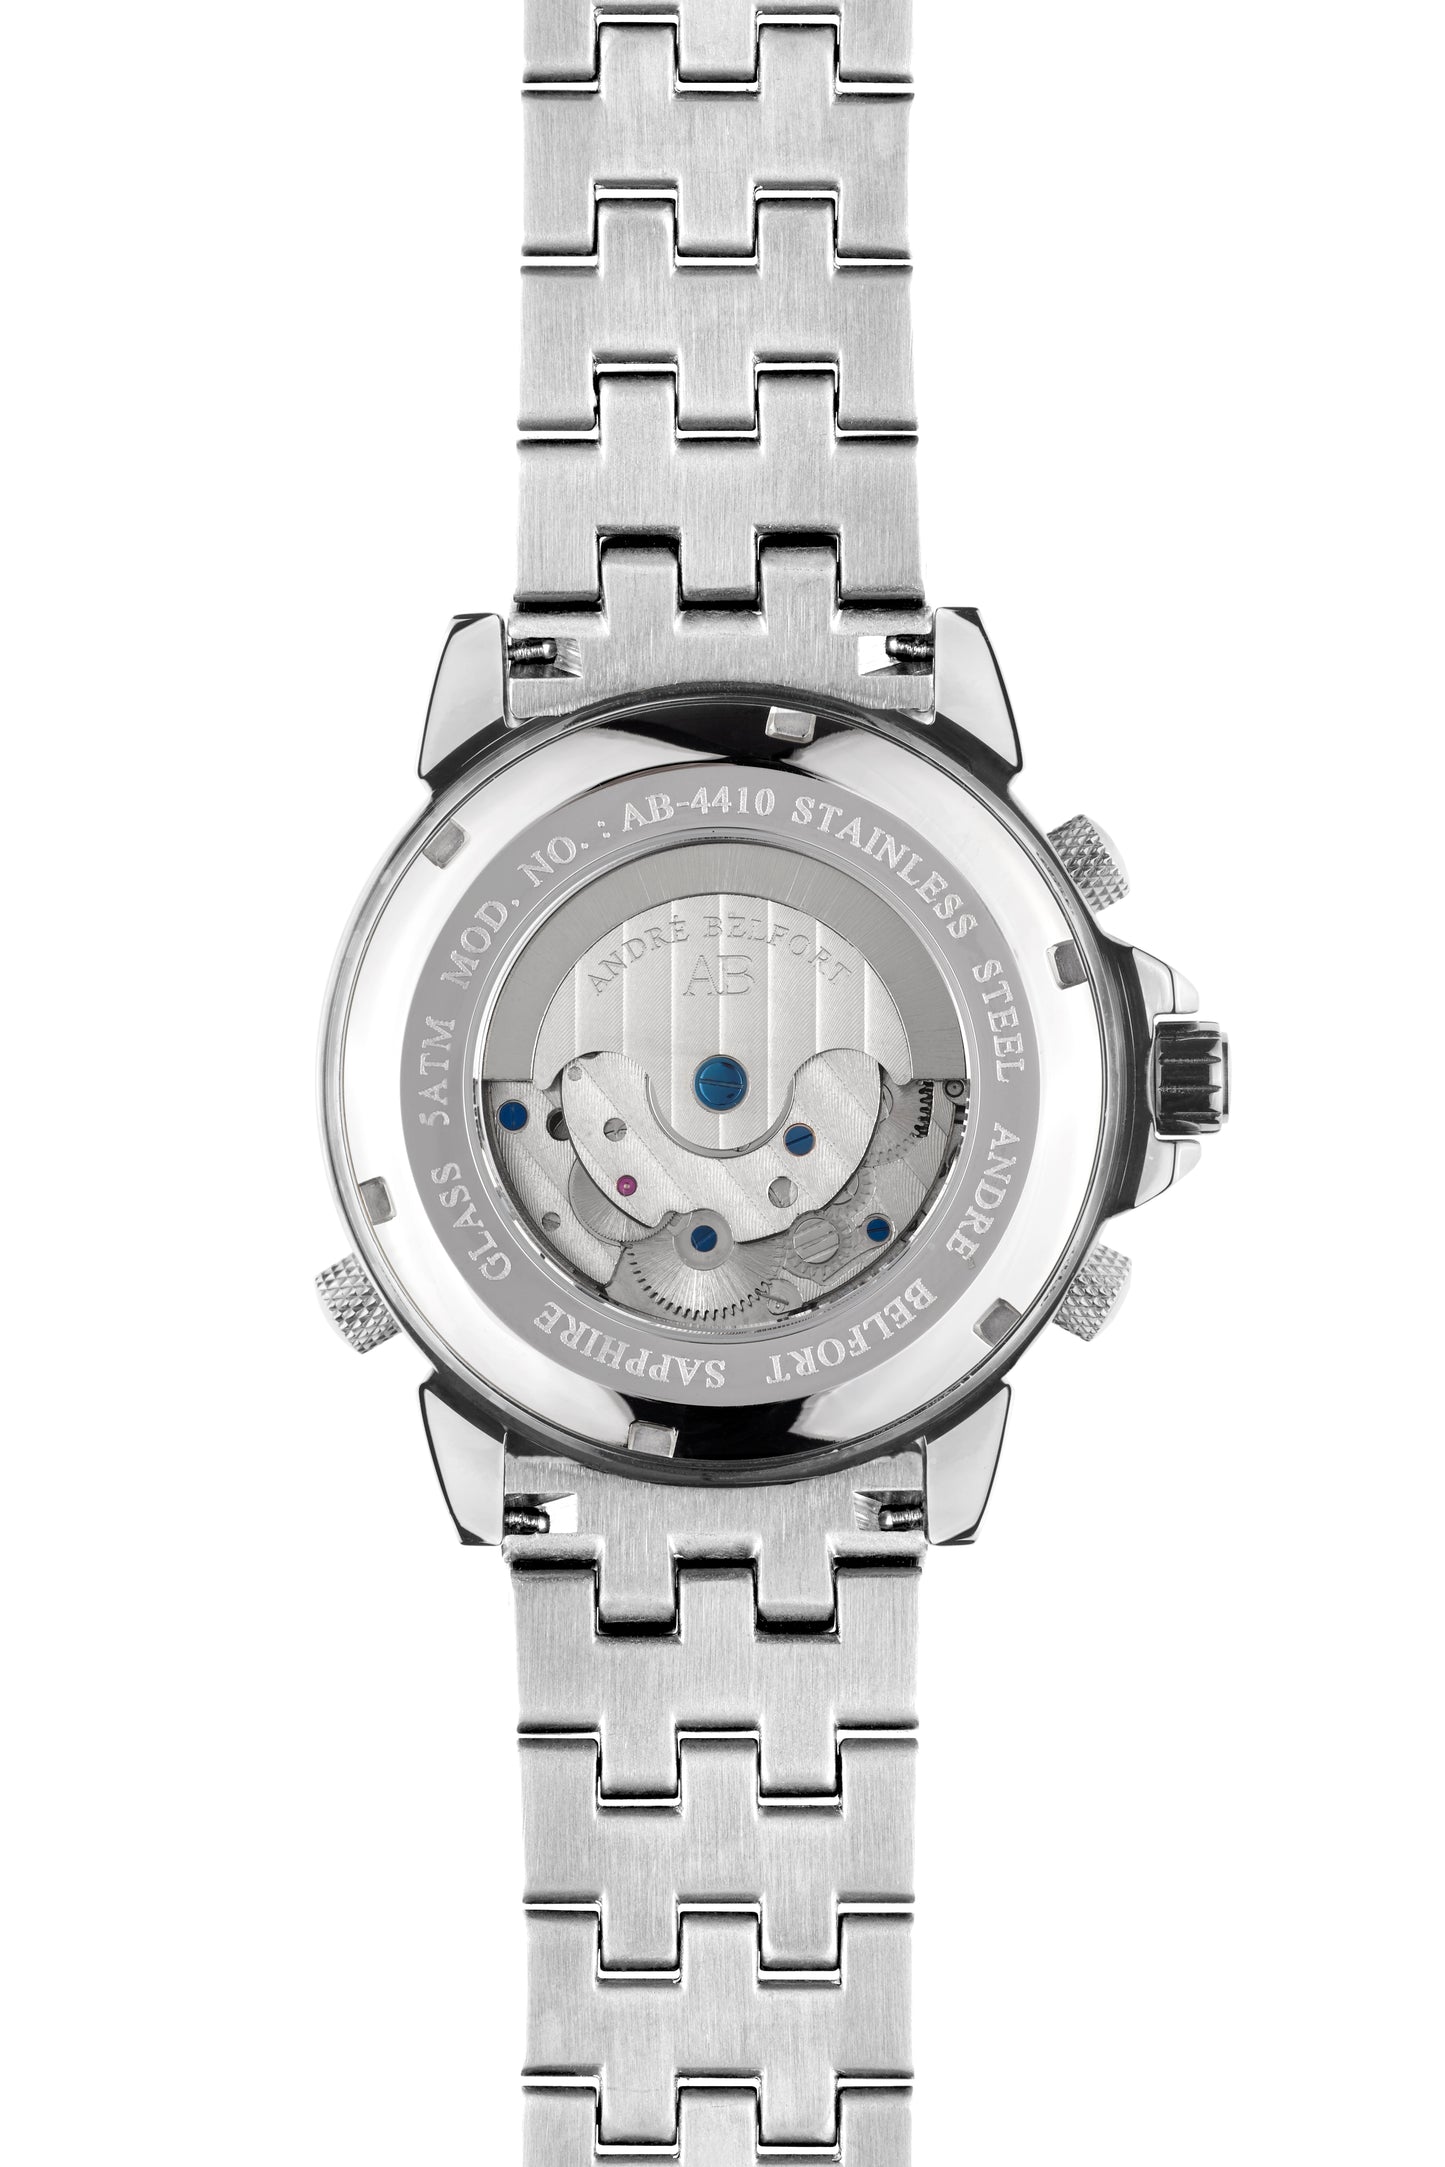 Automatic watches — Étoile Polaire — André Belfort — azur